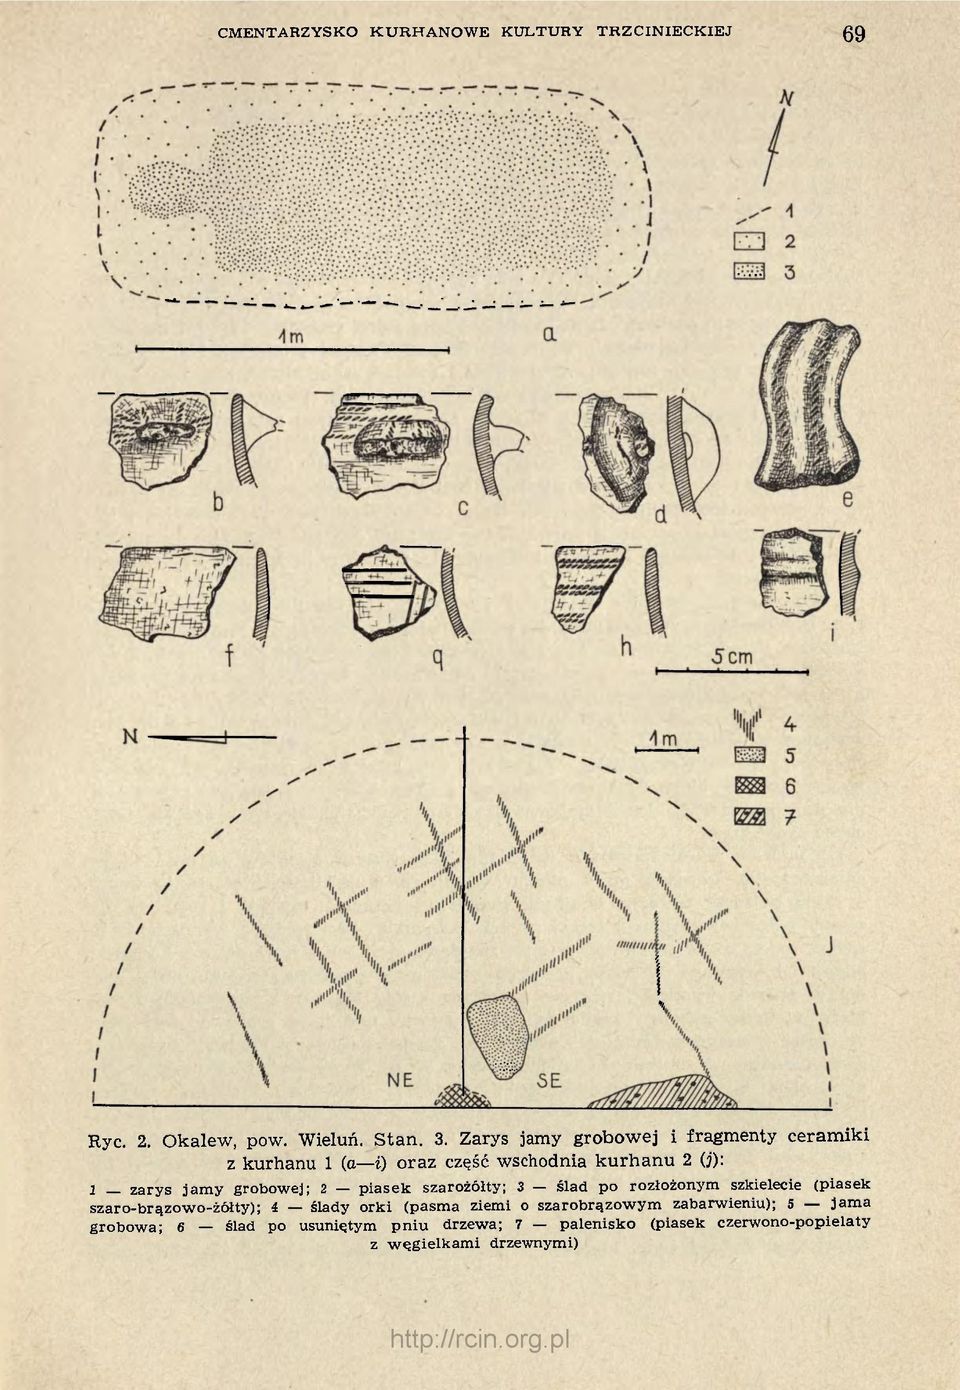 grobowej; 2 piasek szarożółty; 3 ślad po rozłożonym szkielecie (piasek szaro-brązowo-żółty); 4 ślady orki (pasma